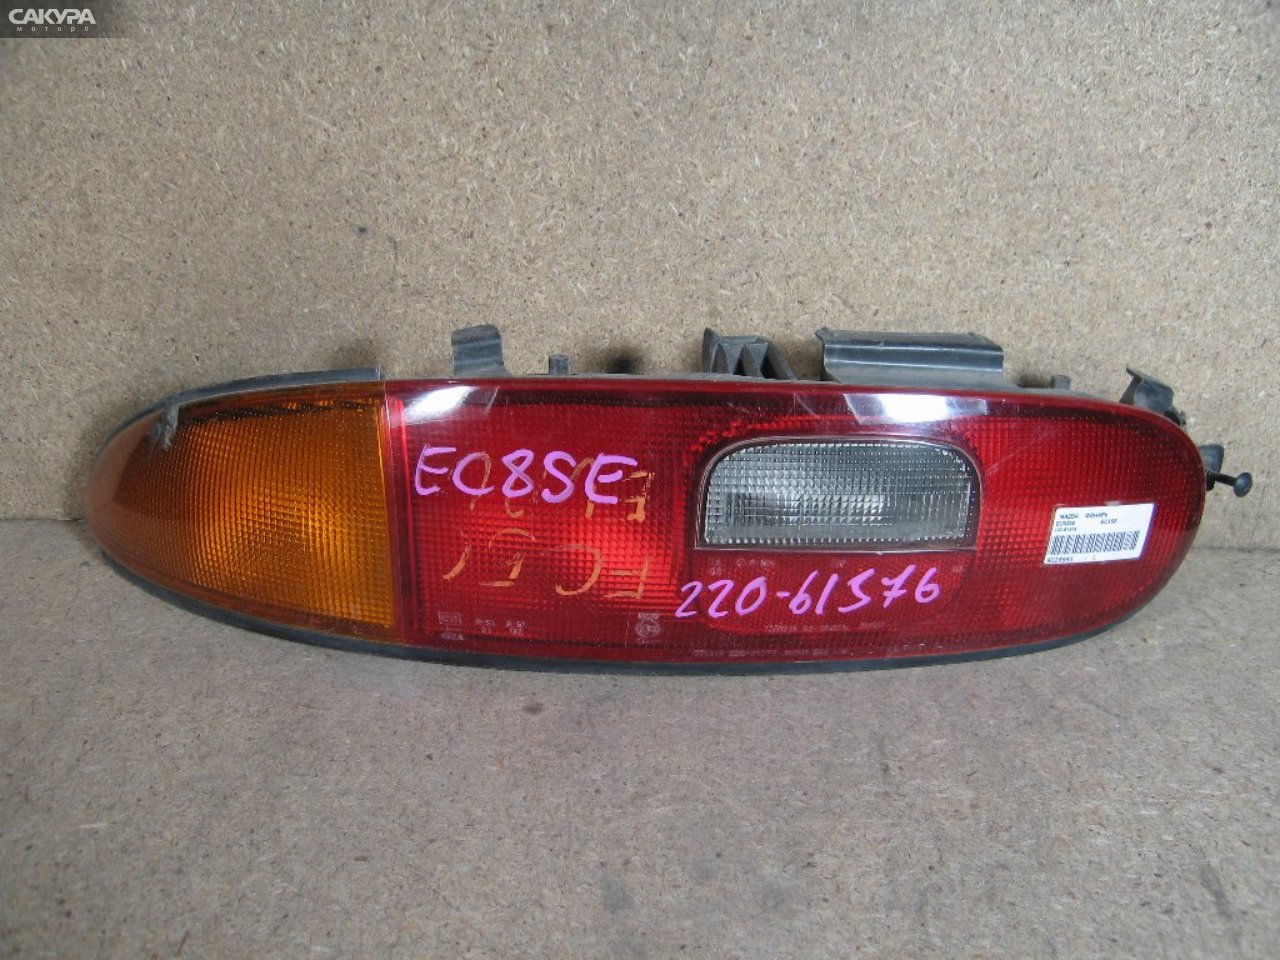 Фонарь стоп-сигнала левый Mazda Eunos Presso EC8SE 220-61376: купить в Сакура Абакан.